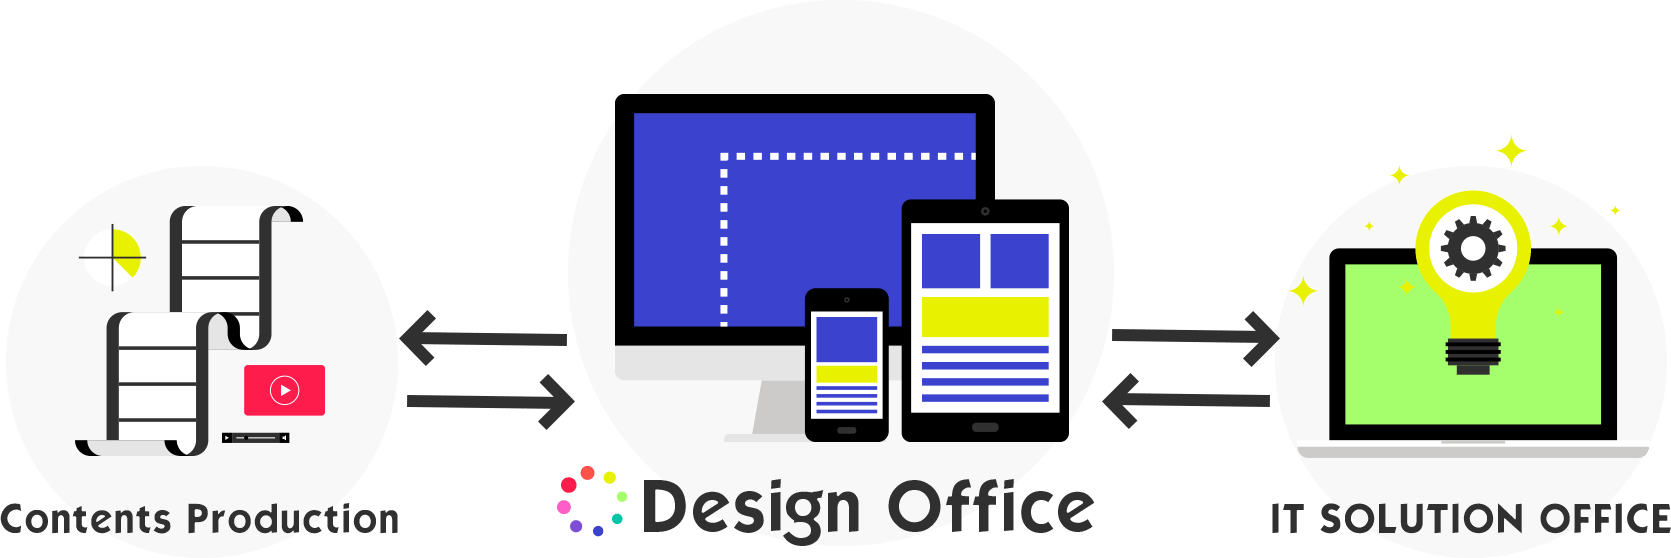 Design Officeとは 立川のwebサイト Dtp イラストなどの企画 制作